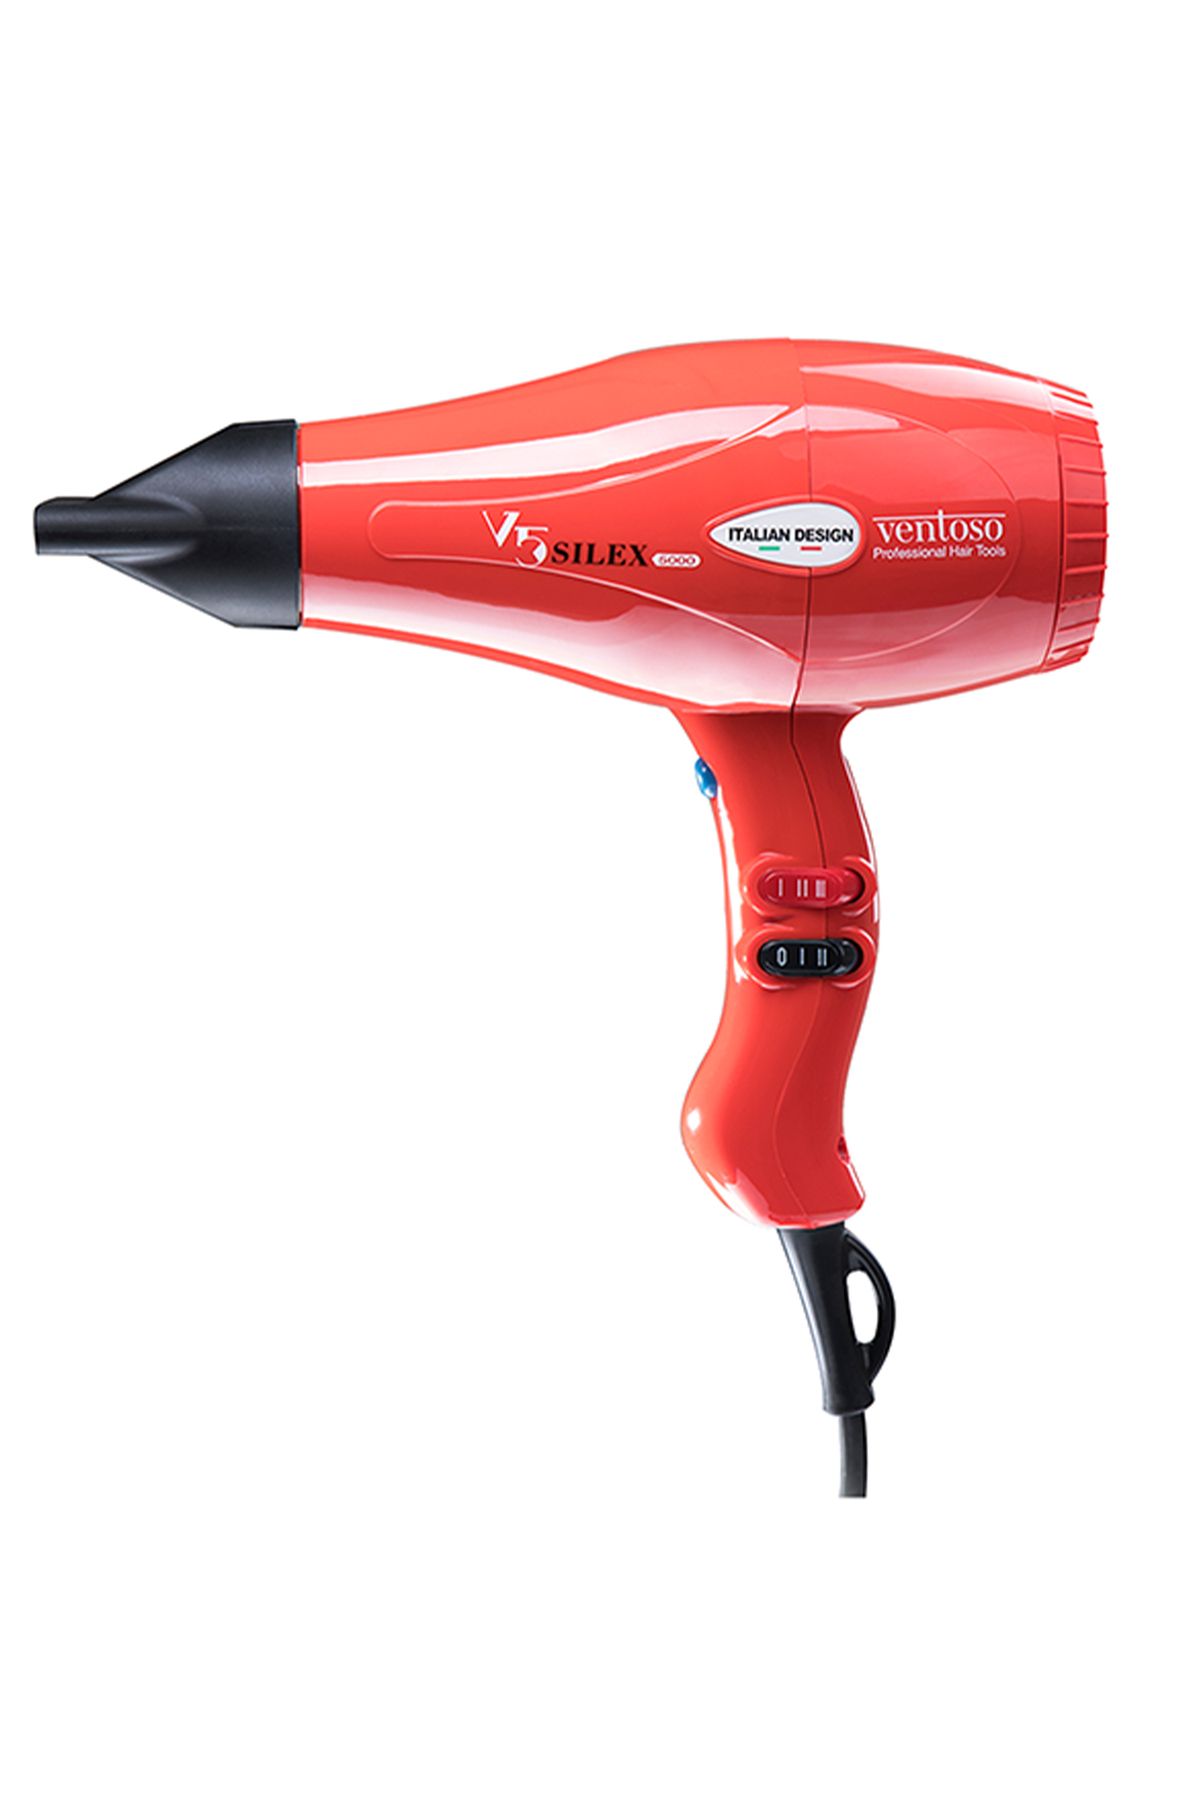 Ventoso V5 Silex5000 Profesyonel Saç Kurutma Ve Fön Makinesi Kırmızı